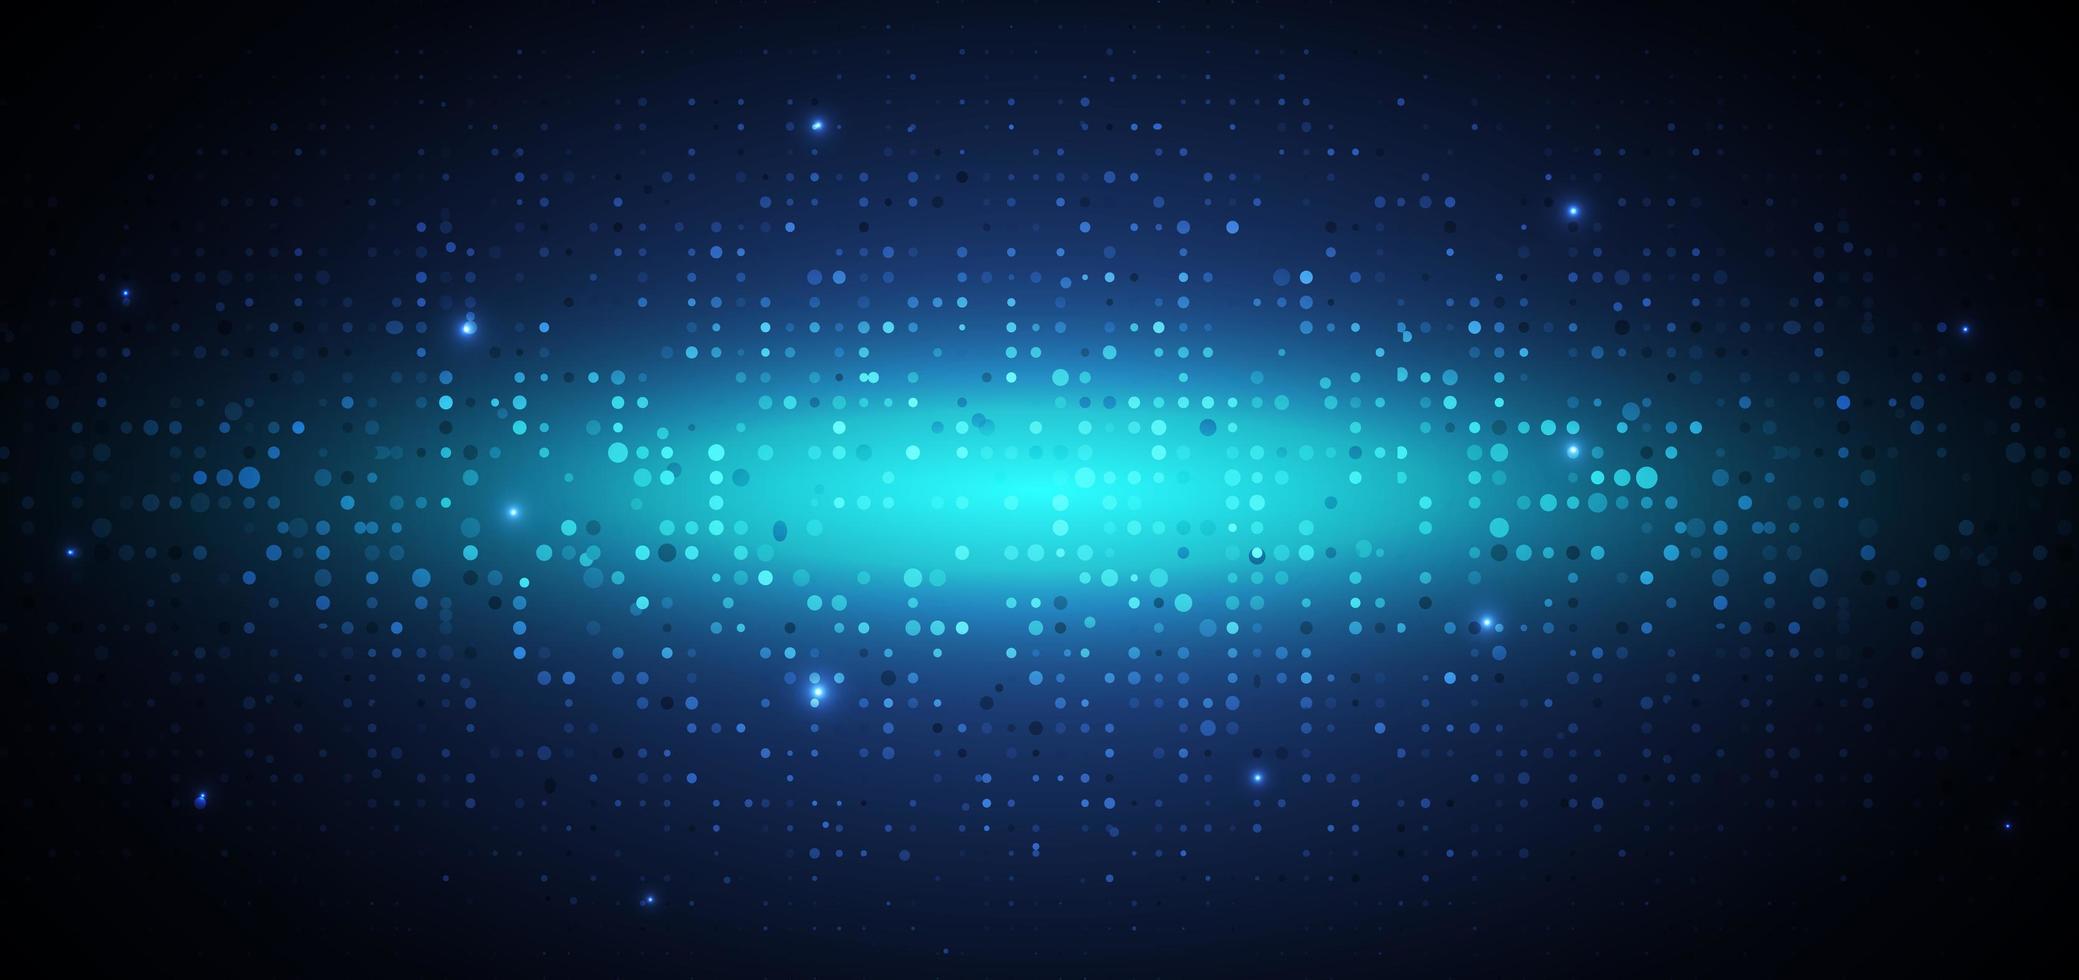 tecnologia astratta futuristica concetto digitale dot pattern con elementi quadrati di particelle incandescenti di illuminazione su sfondo blu scuro. vettore